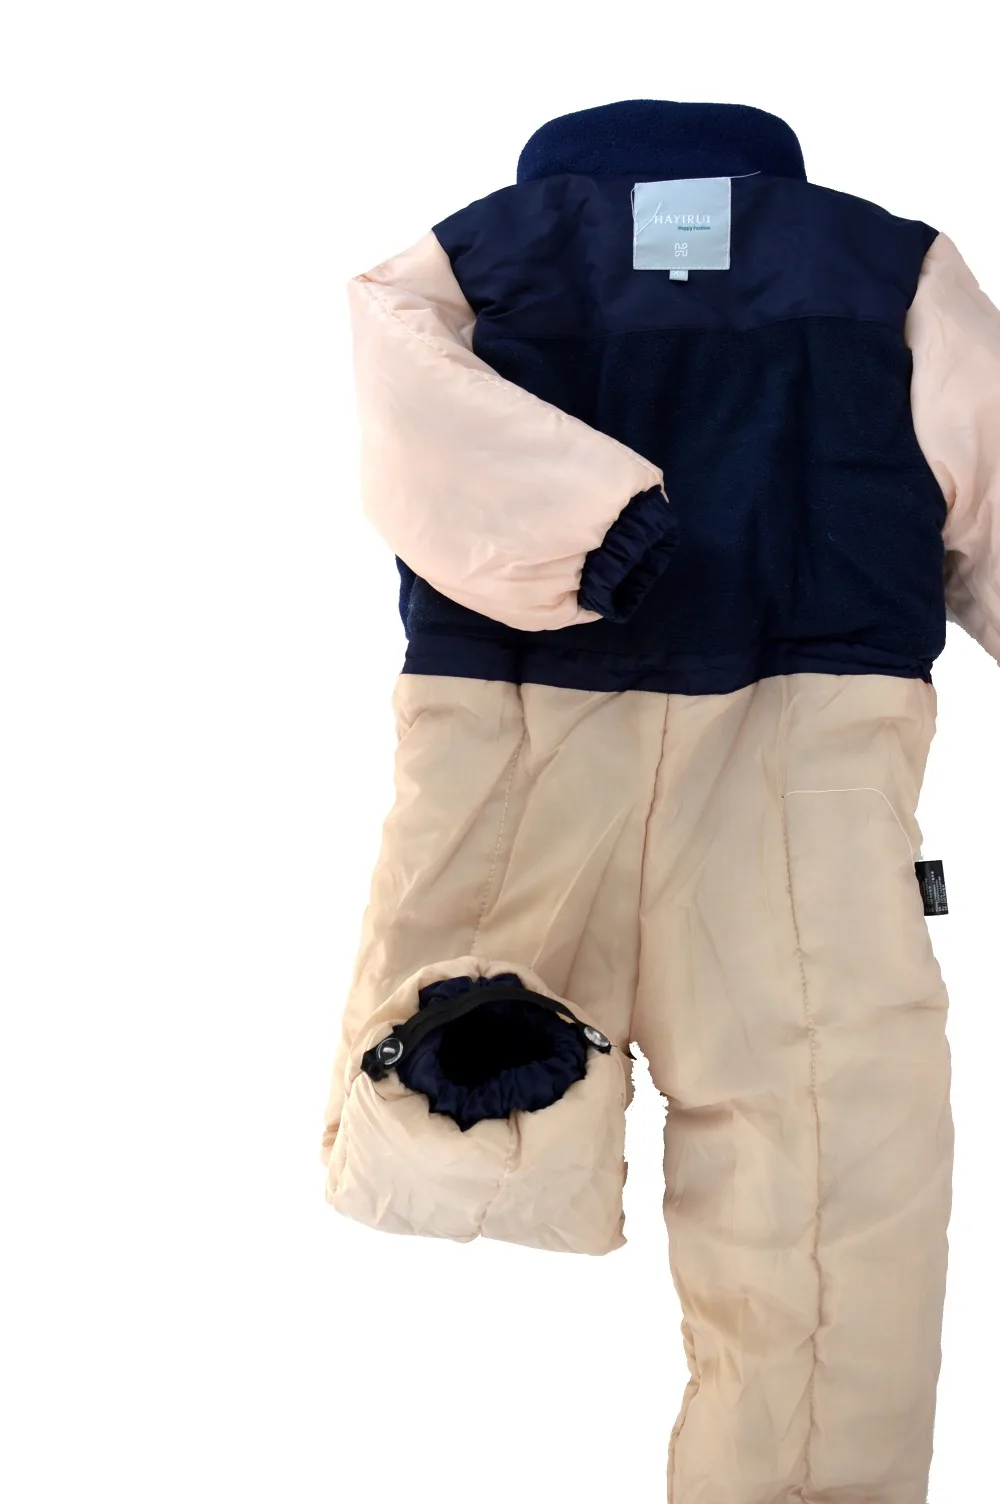 Детский комбинезон, лыжный костюм, хлопковая одежда для мальчиков и девочек 4-10 лет